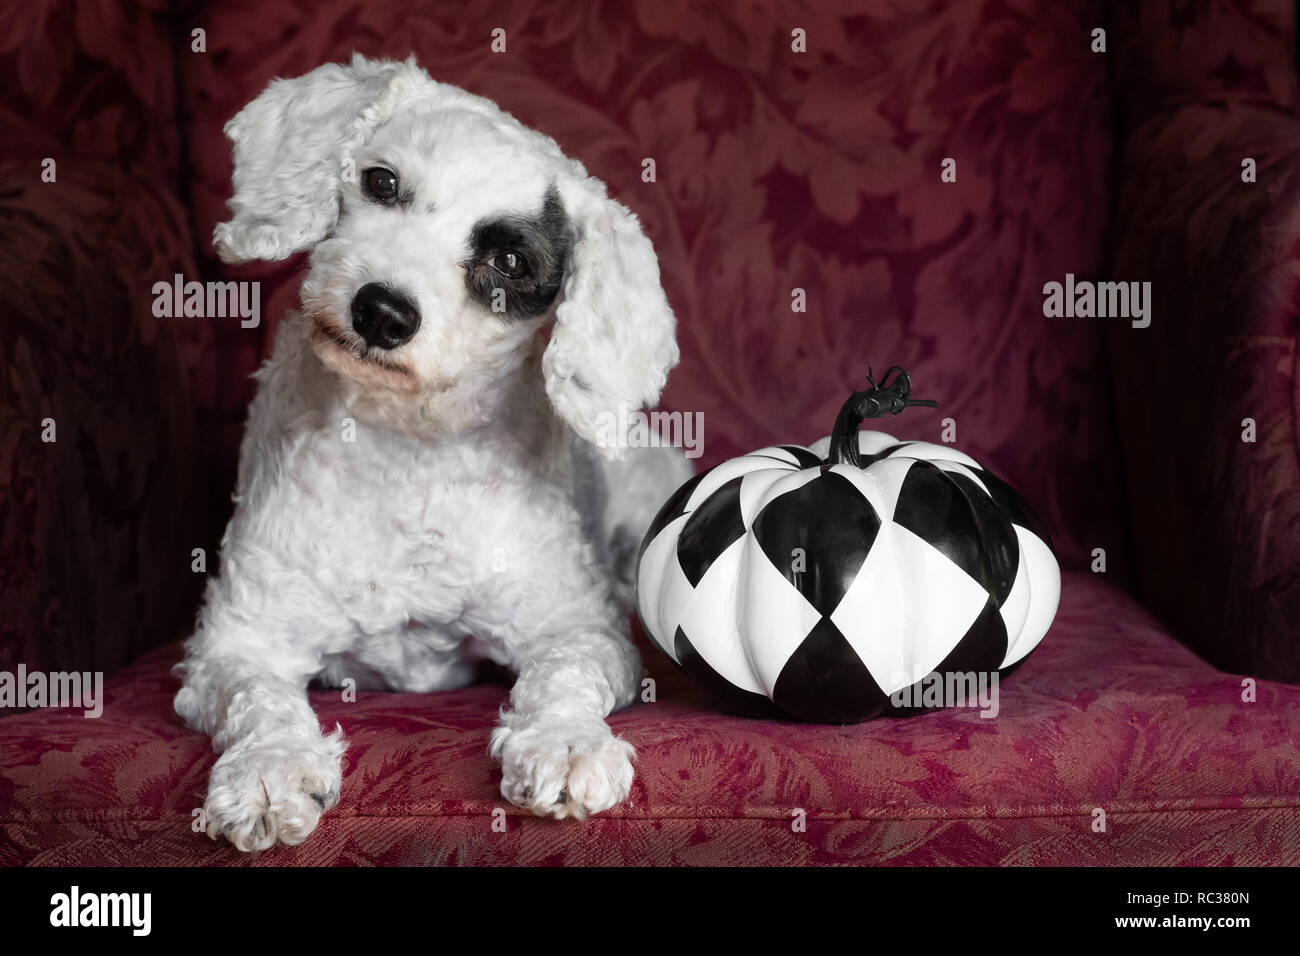 Weißer Hund mit schwarzem Auge spot Verlegung mit schwarzen und weißen  Kürbis auf Stuhl innen Stockfotografie - Alamy